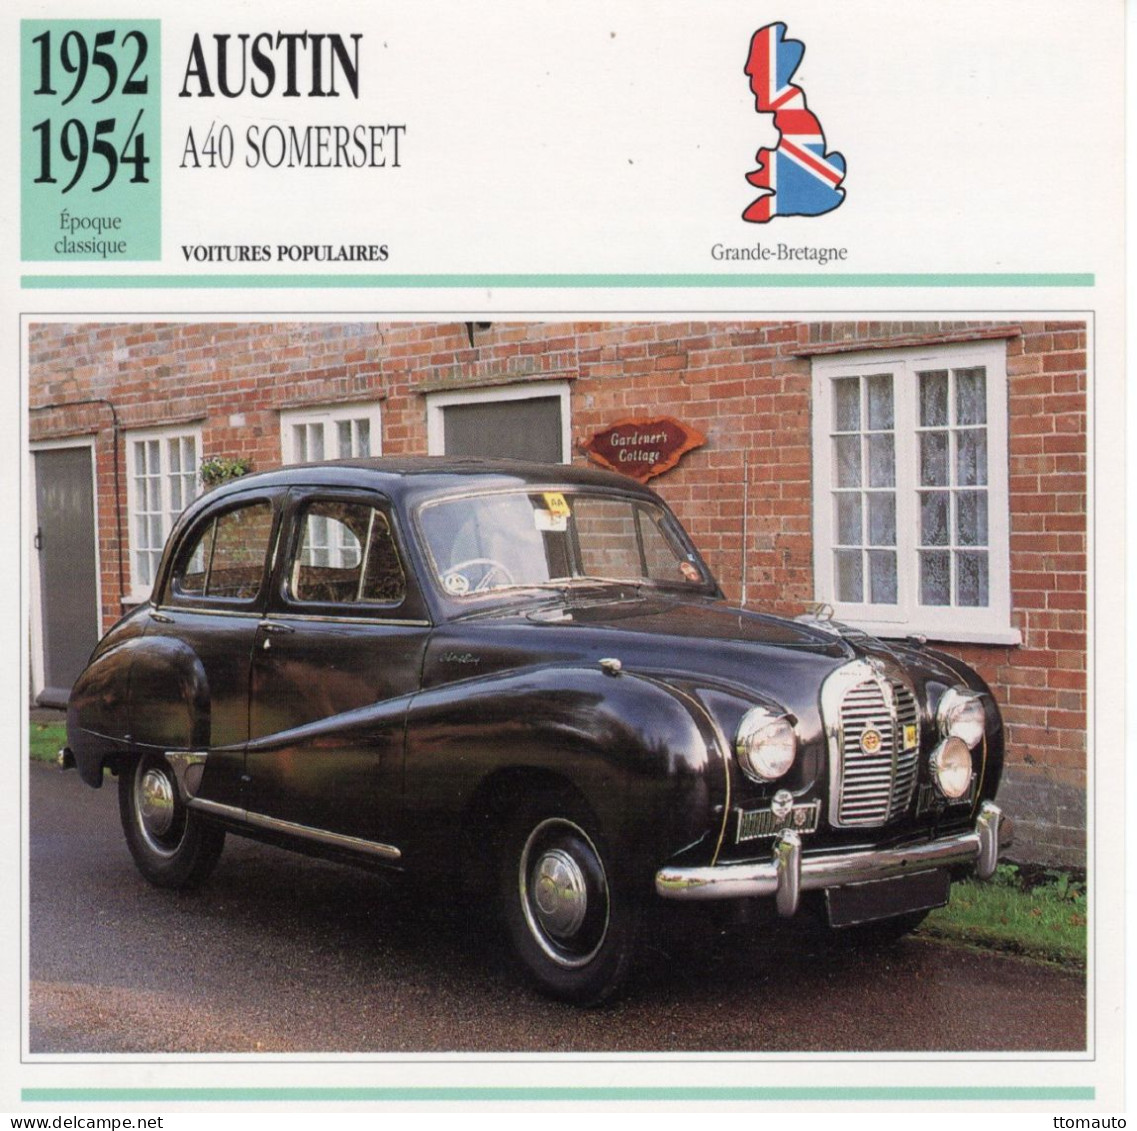 Austin A40 Somerset -  1953  - Voiture Populaire -  Fiche Technique Automobile (GB) - Auto's